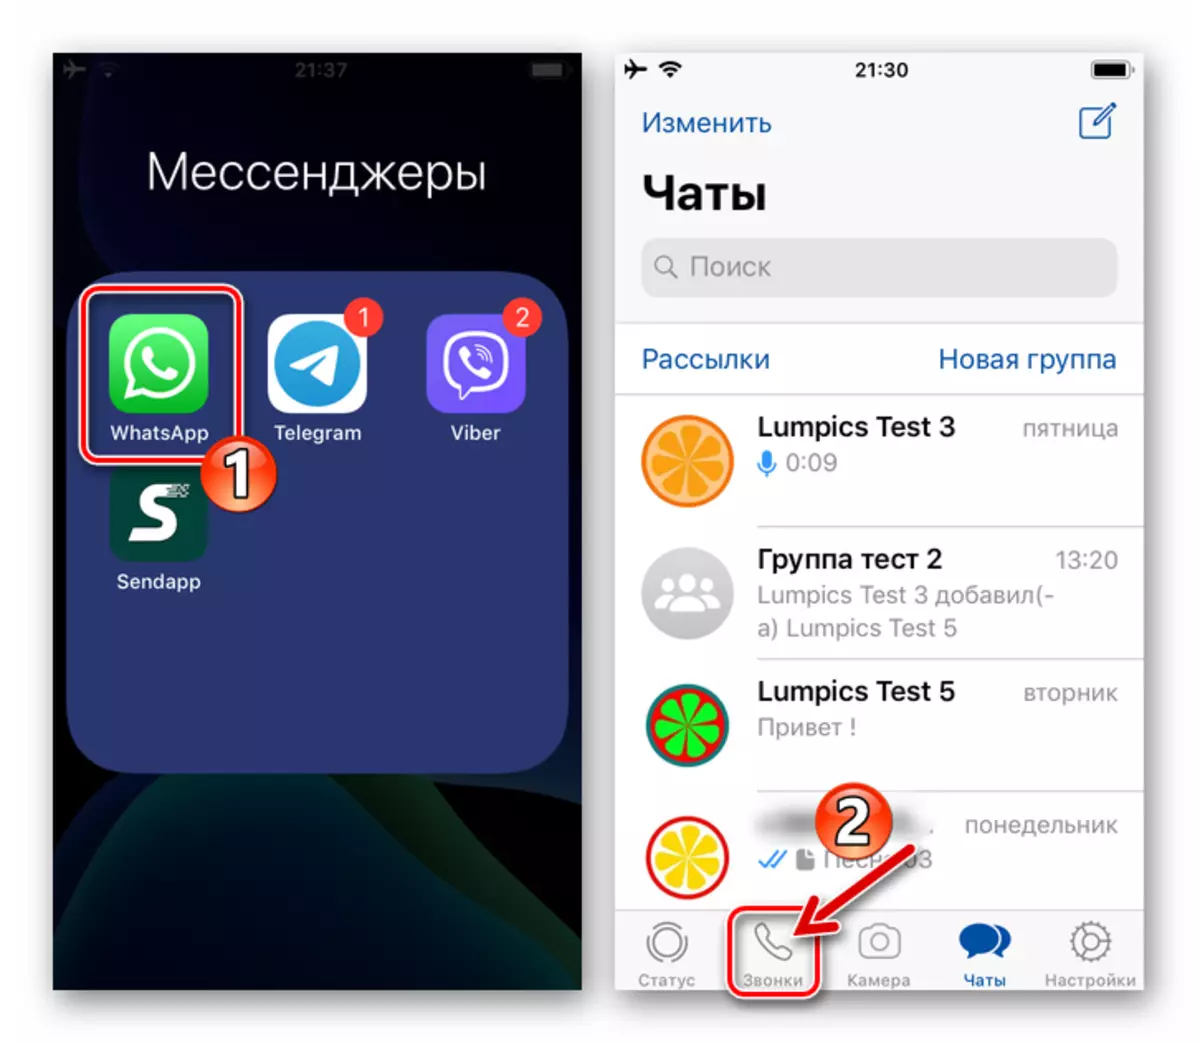 WhatsApp dla iPhone'a rozpoczęcia programu Messenger, przejdź do sekcji Połączenia do połączenia wideo